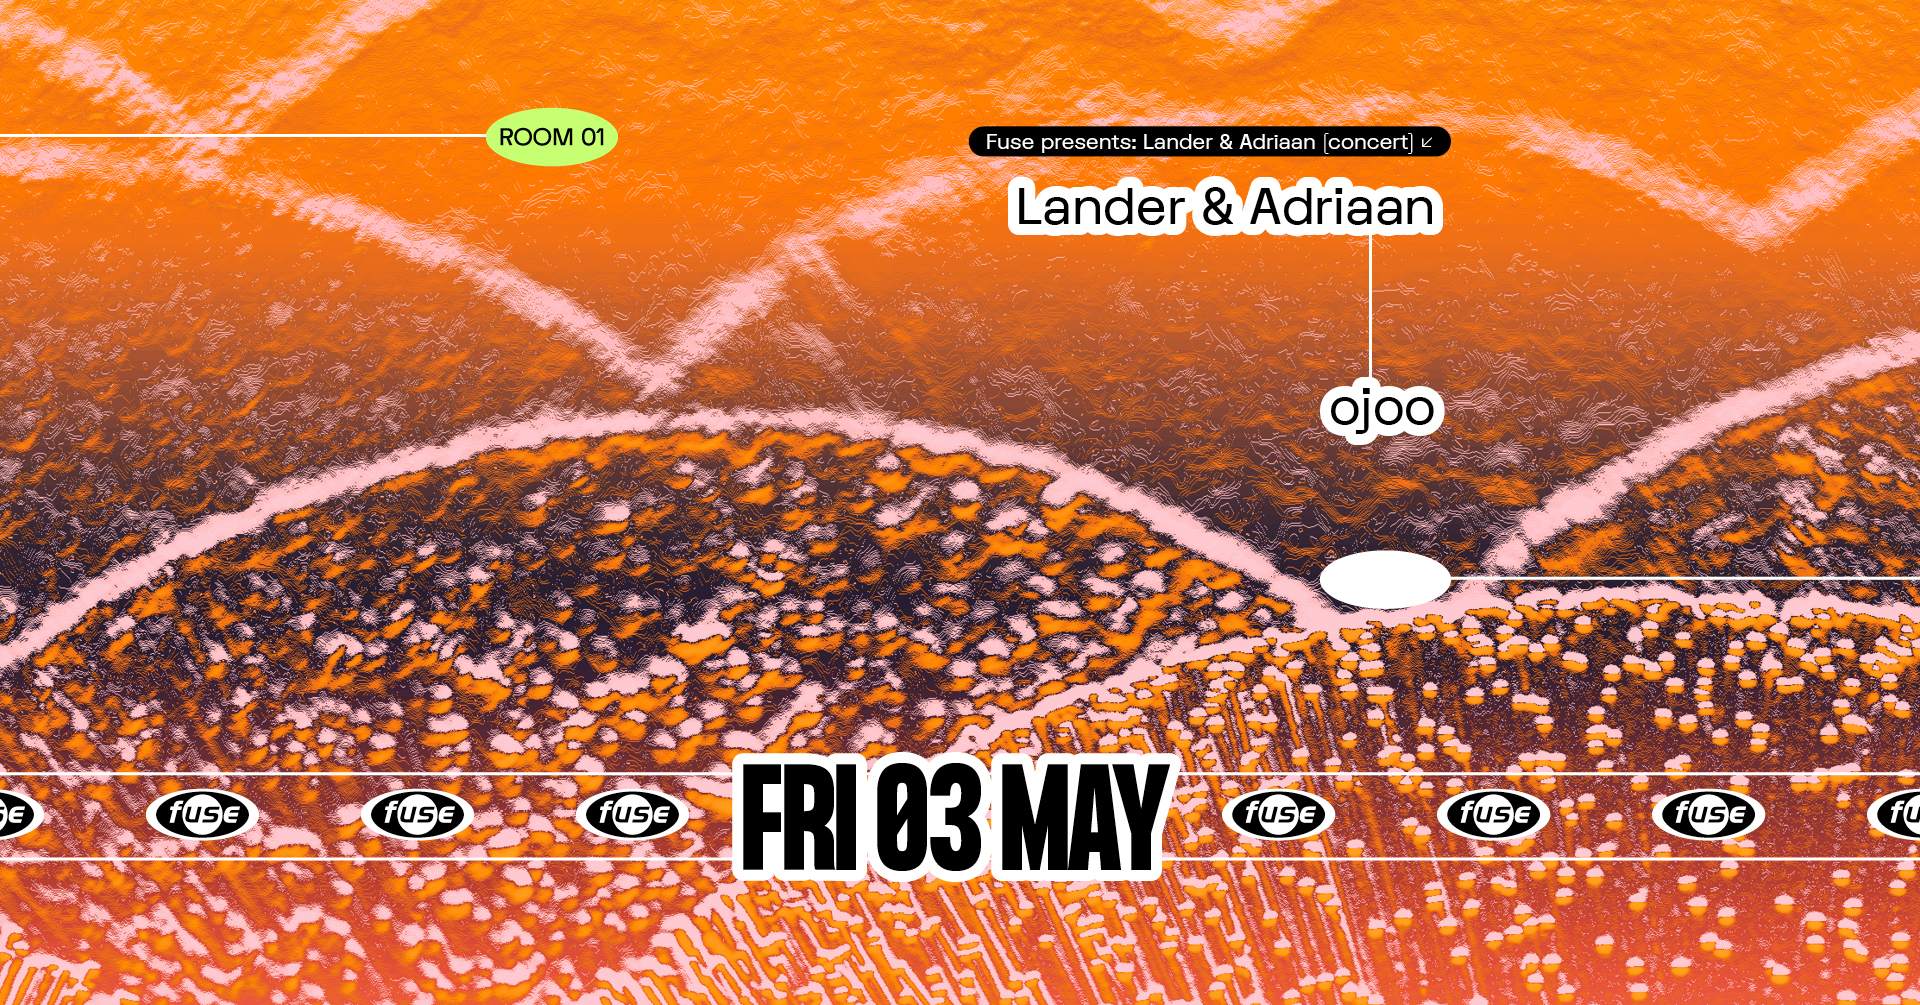 Fuse presents: Lander & Adriaan (concert) - Página frontal